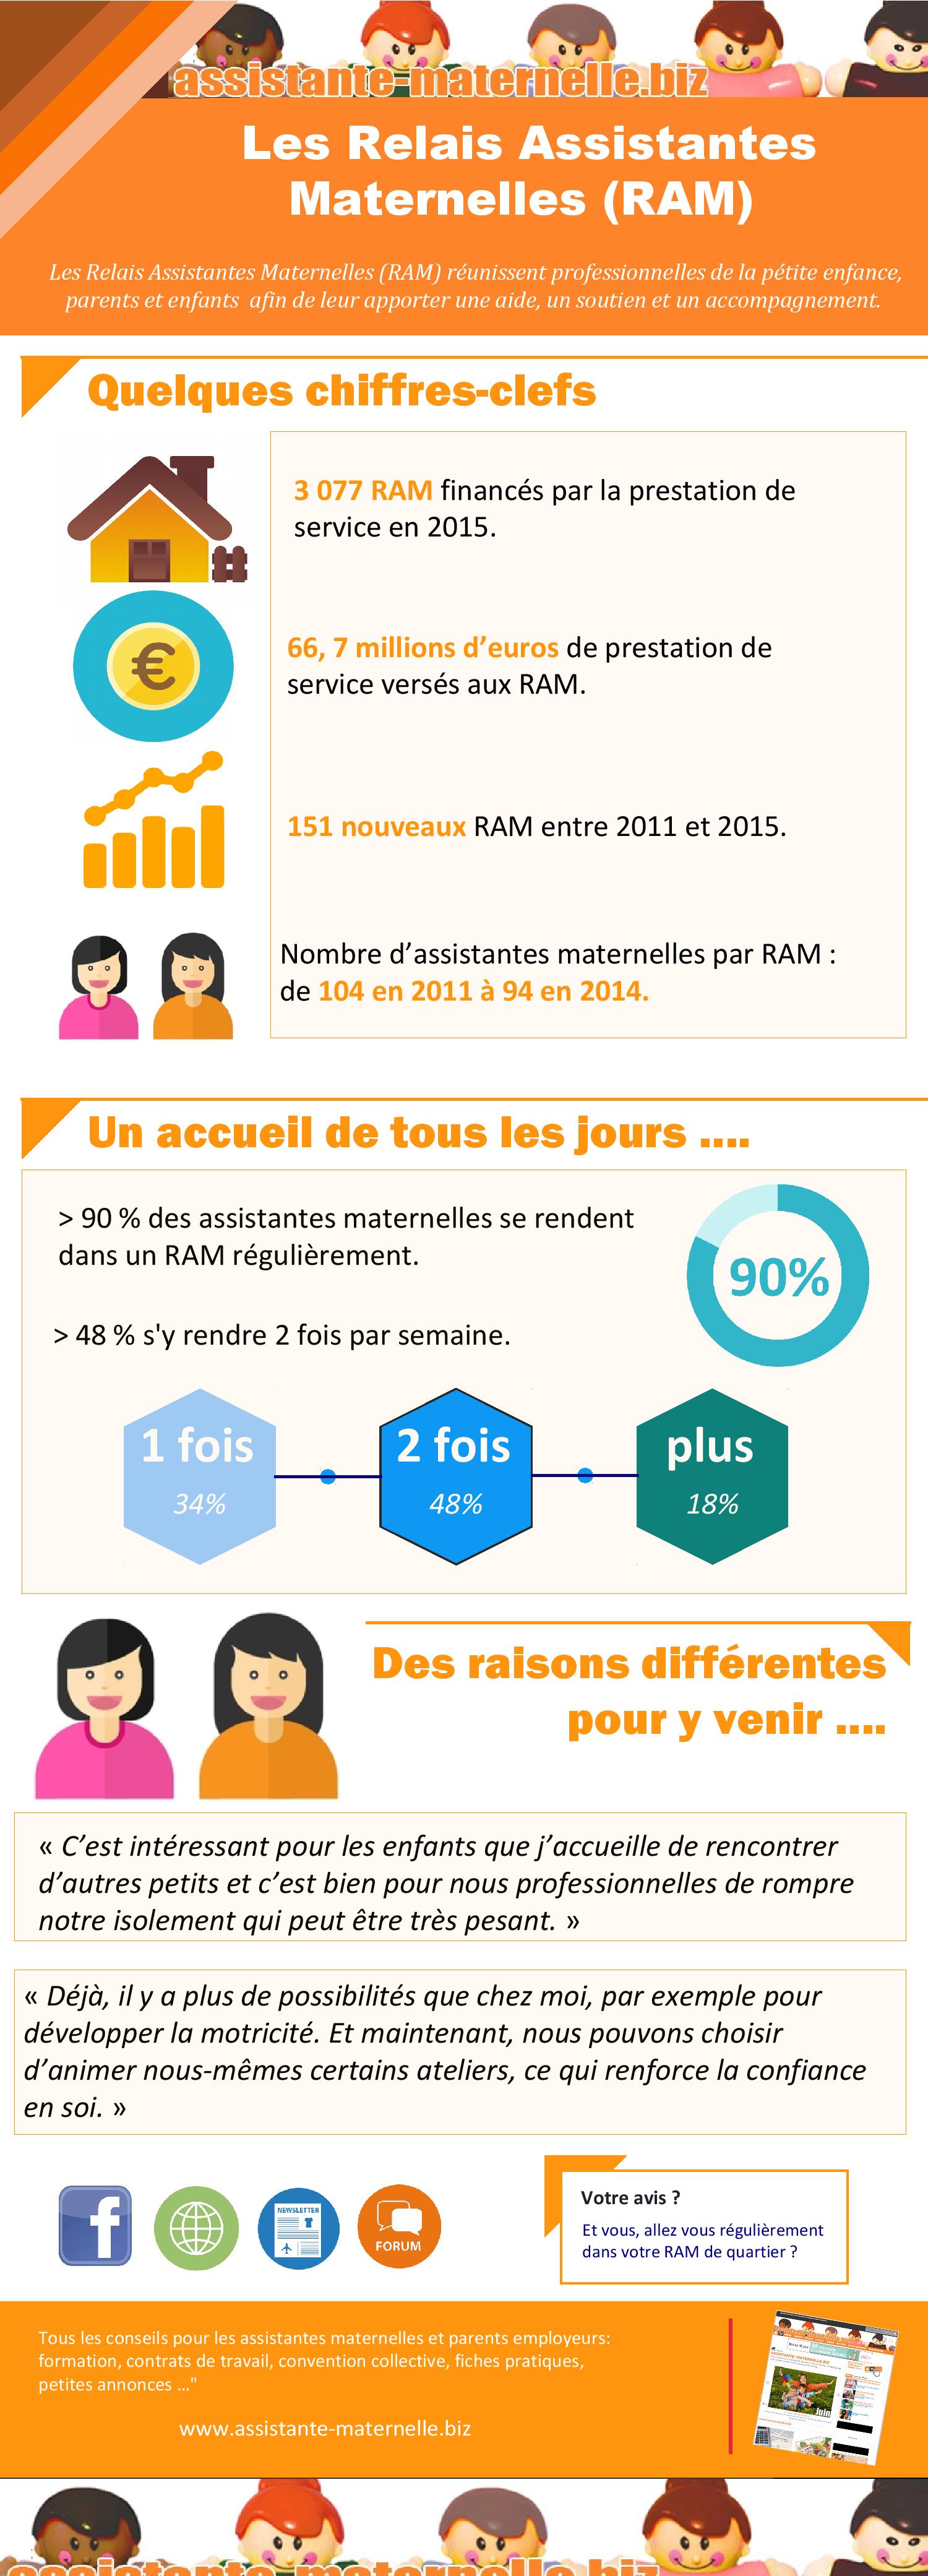 [Infographie] : Les Relais Assistantes
Maternelles (RAM)